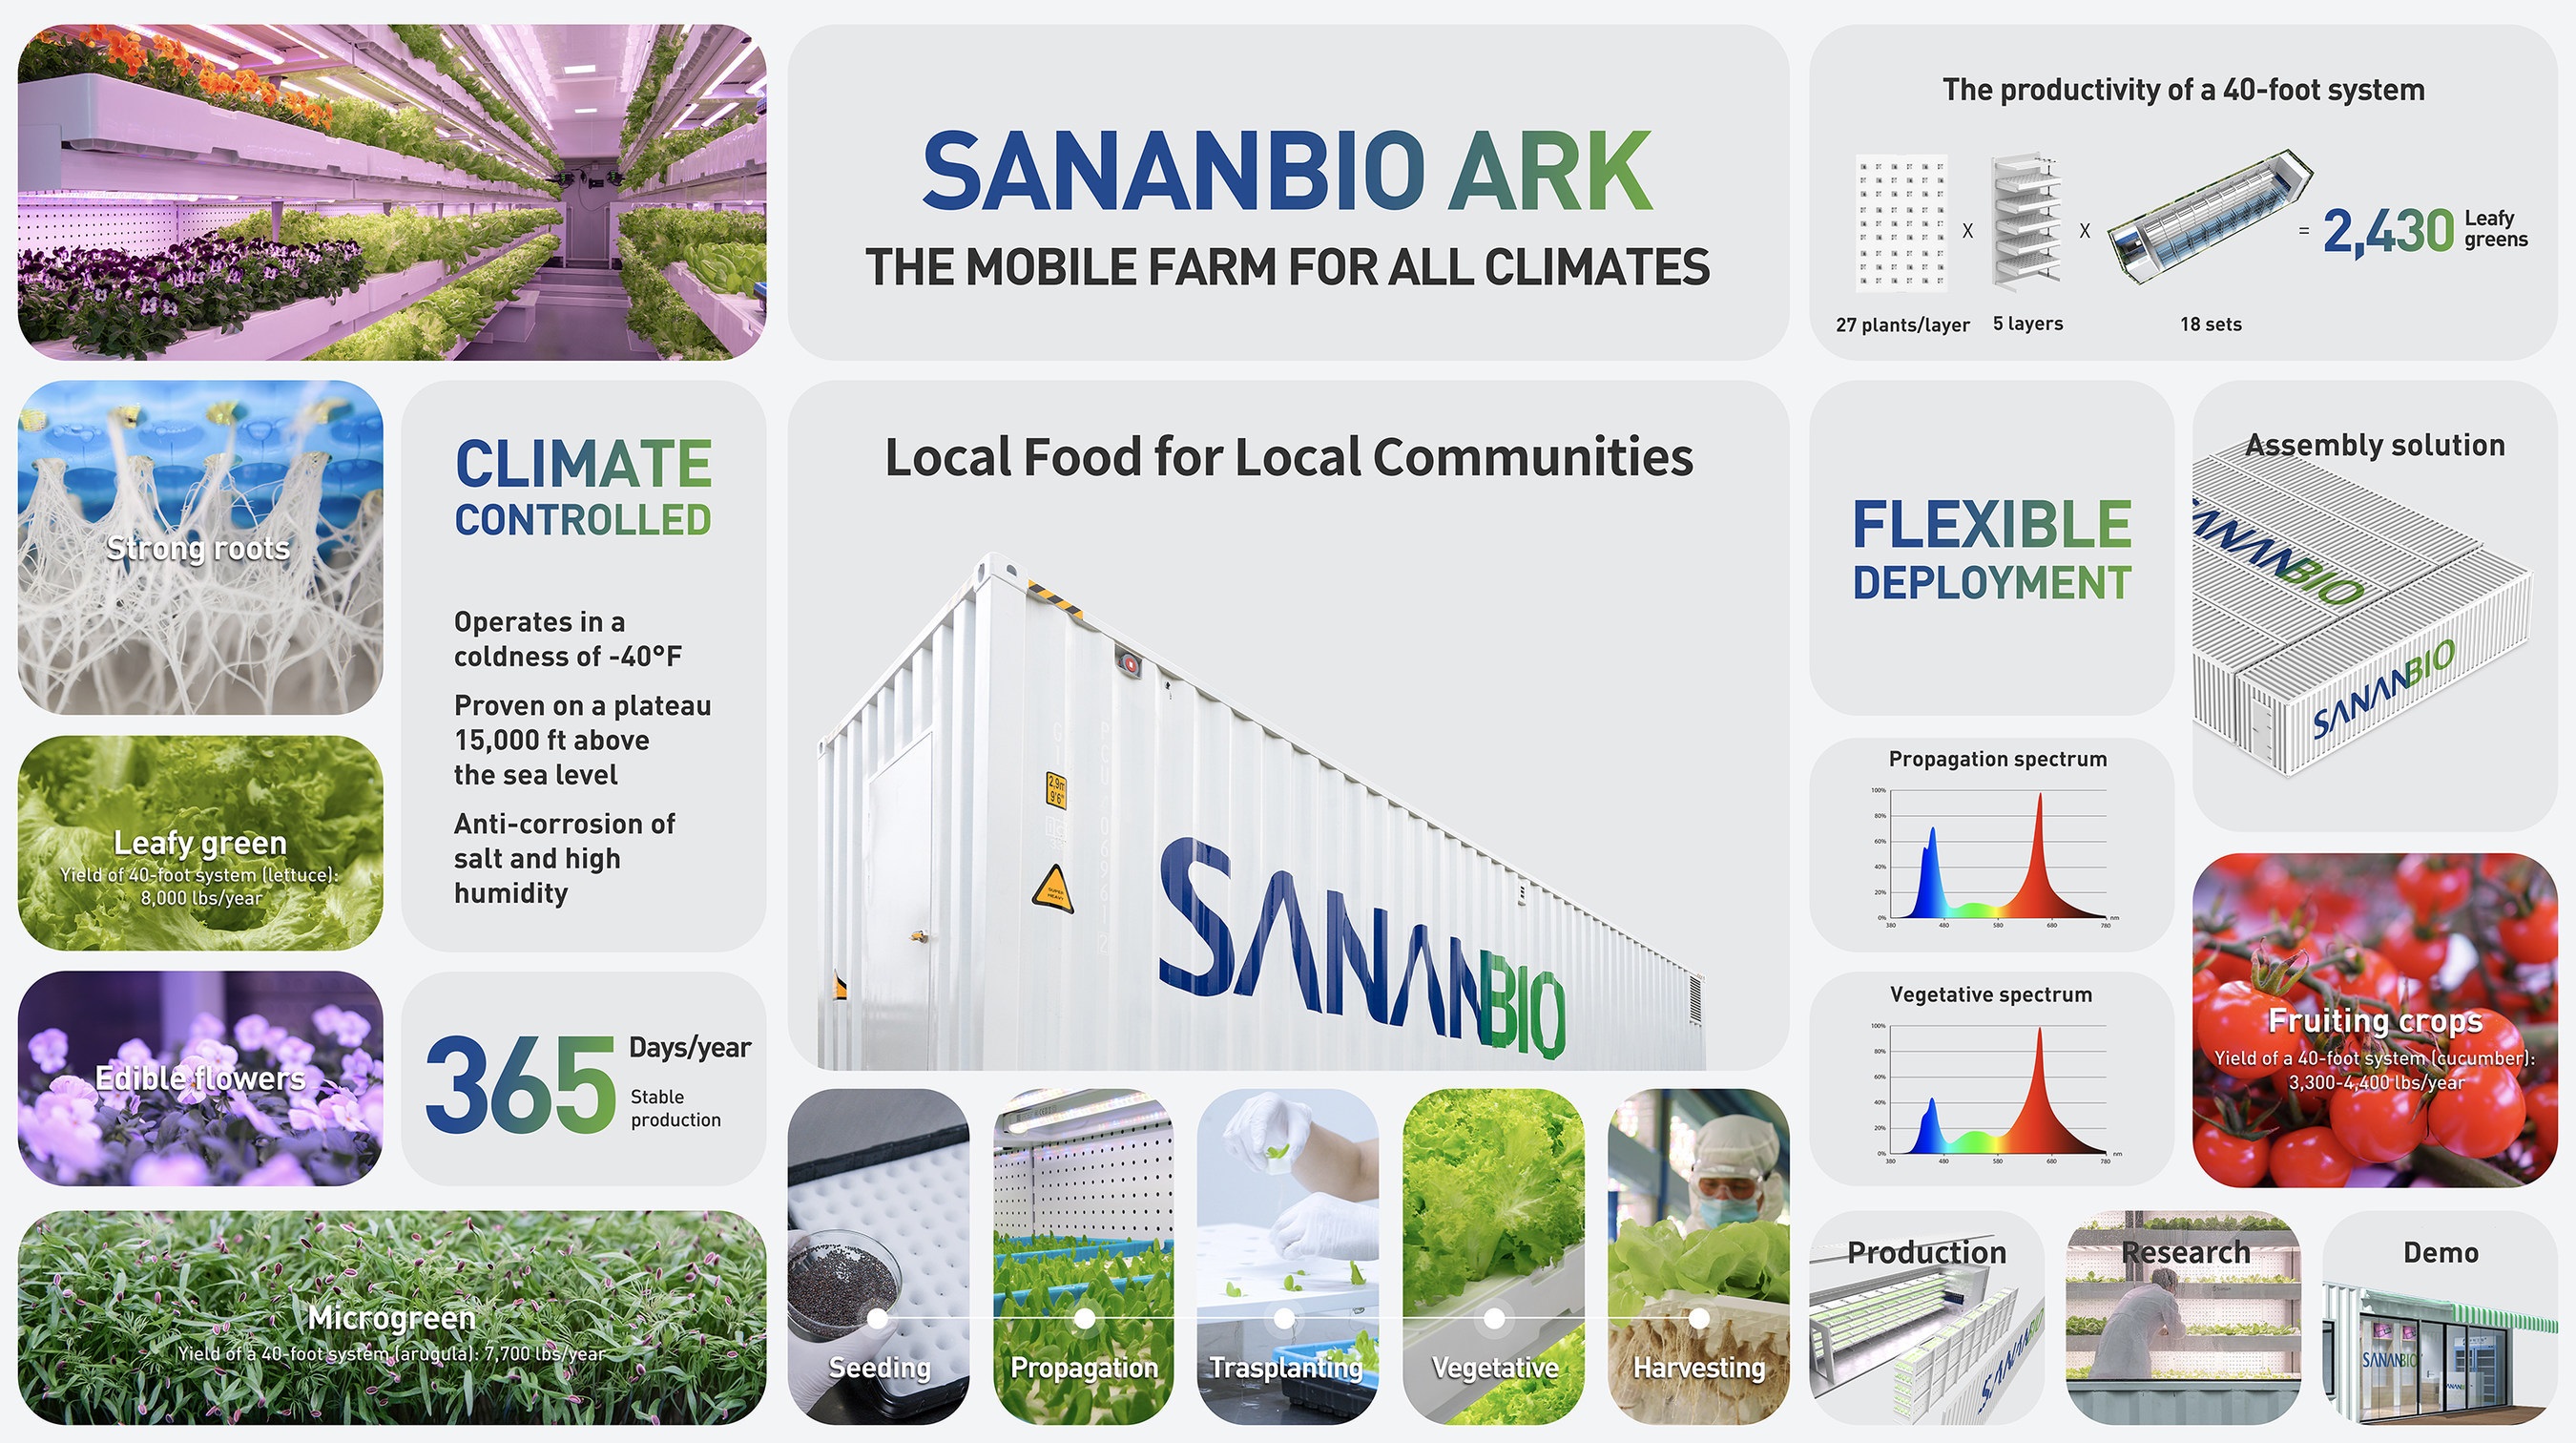 SANANBIO ARK ฟาร์มเคลื่อนที่สำหรับทุกสภาพอากาศ ให้ชุมชนมีอาหารสดใหม่บริโภคตลอดปี